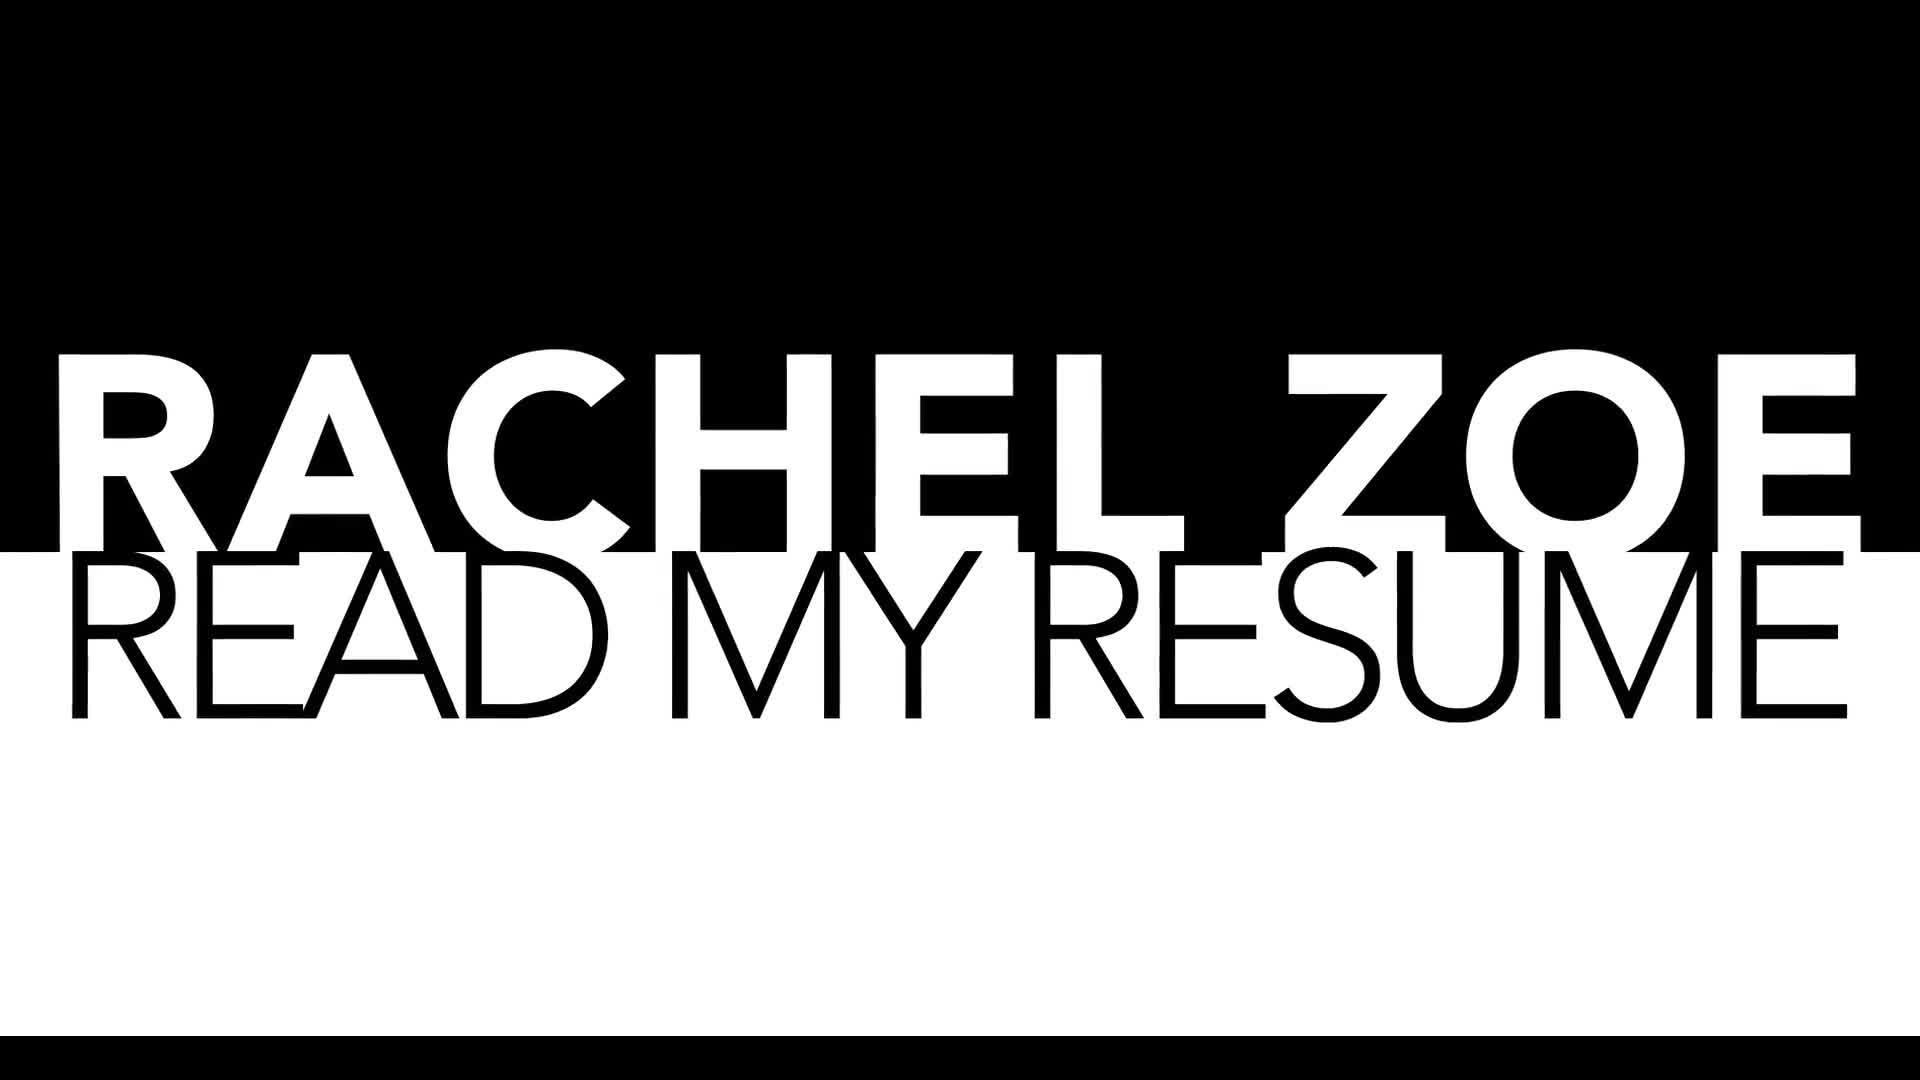 Watch Rachel Zoe read her resume, get inspired